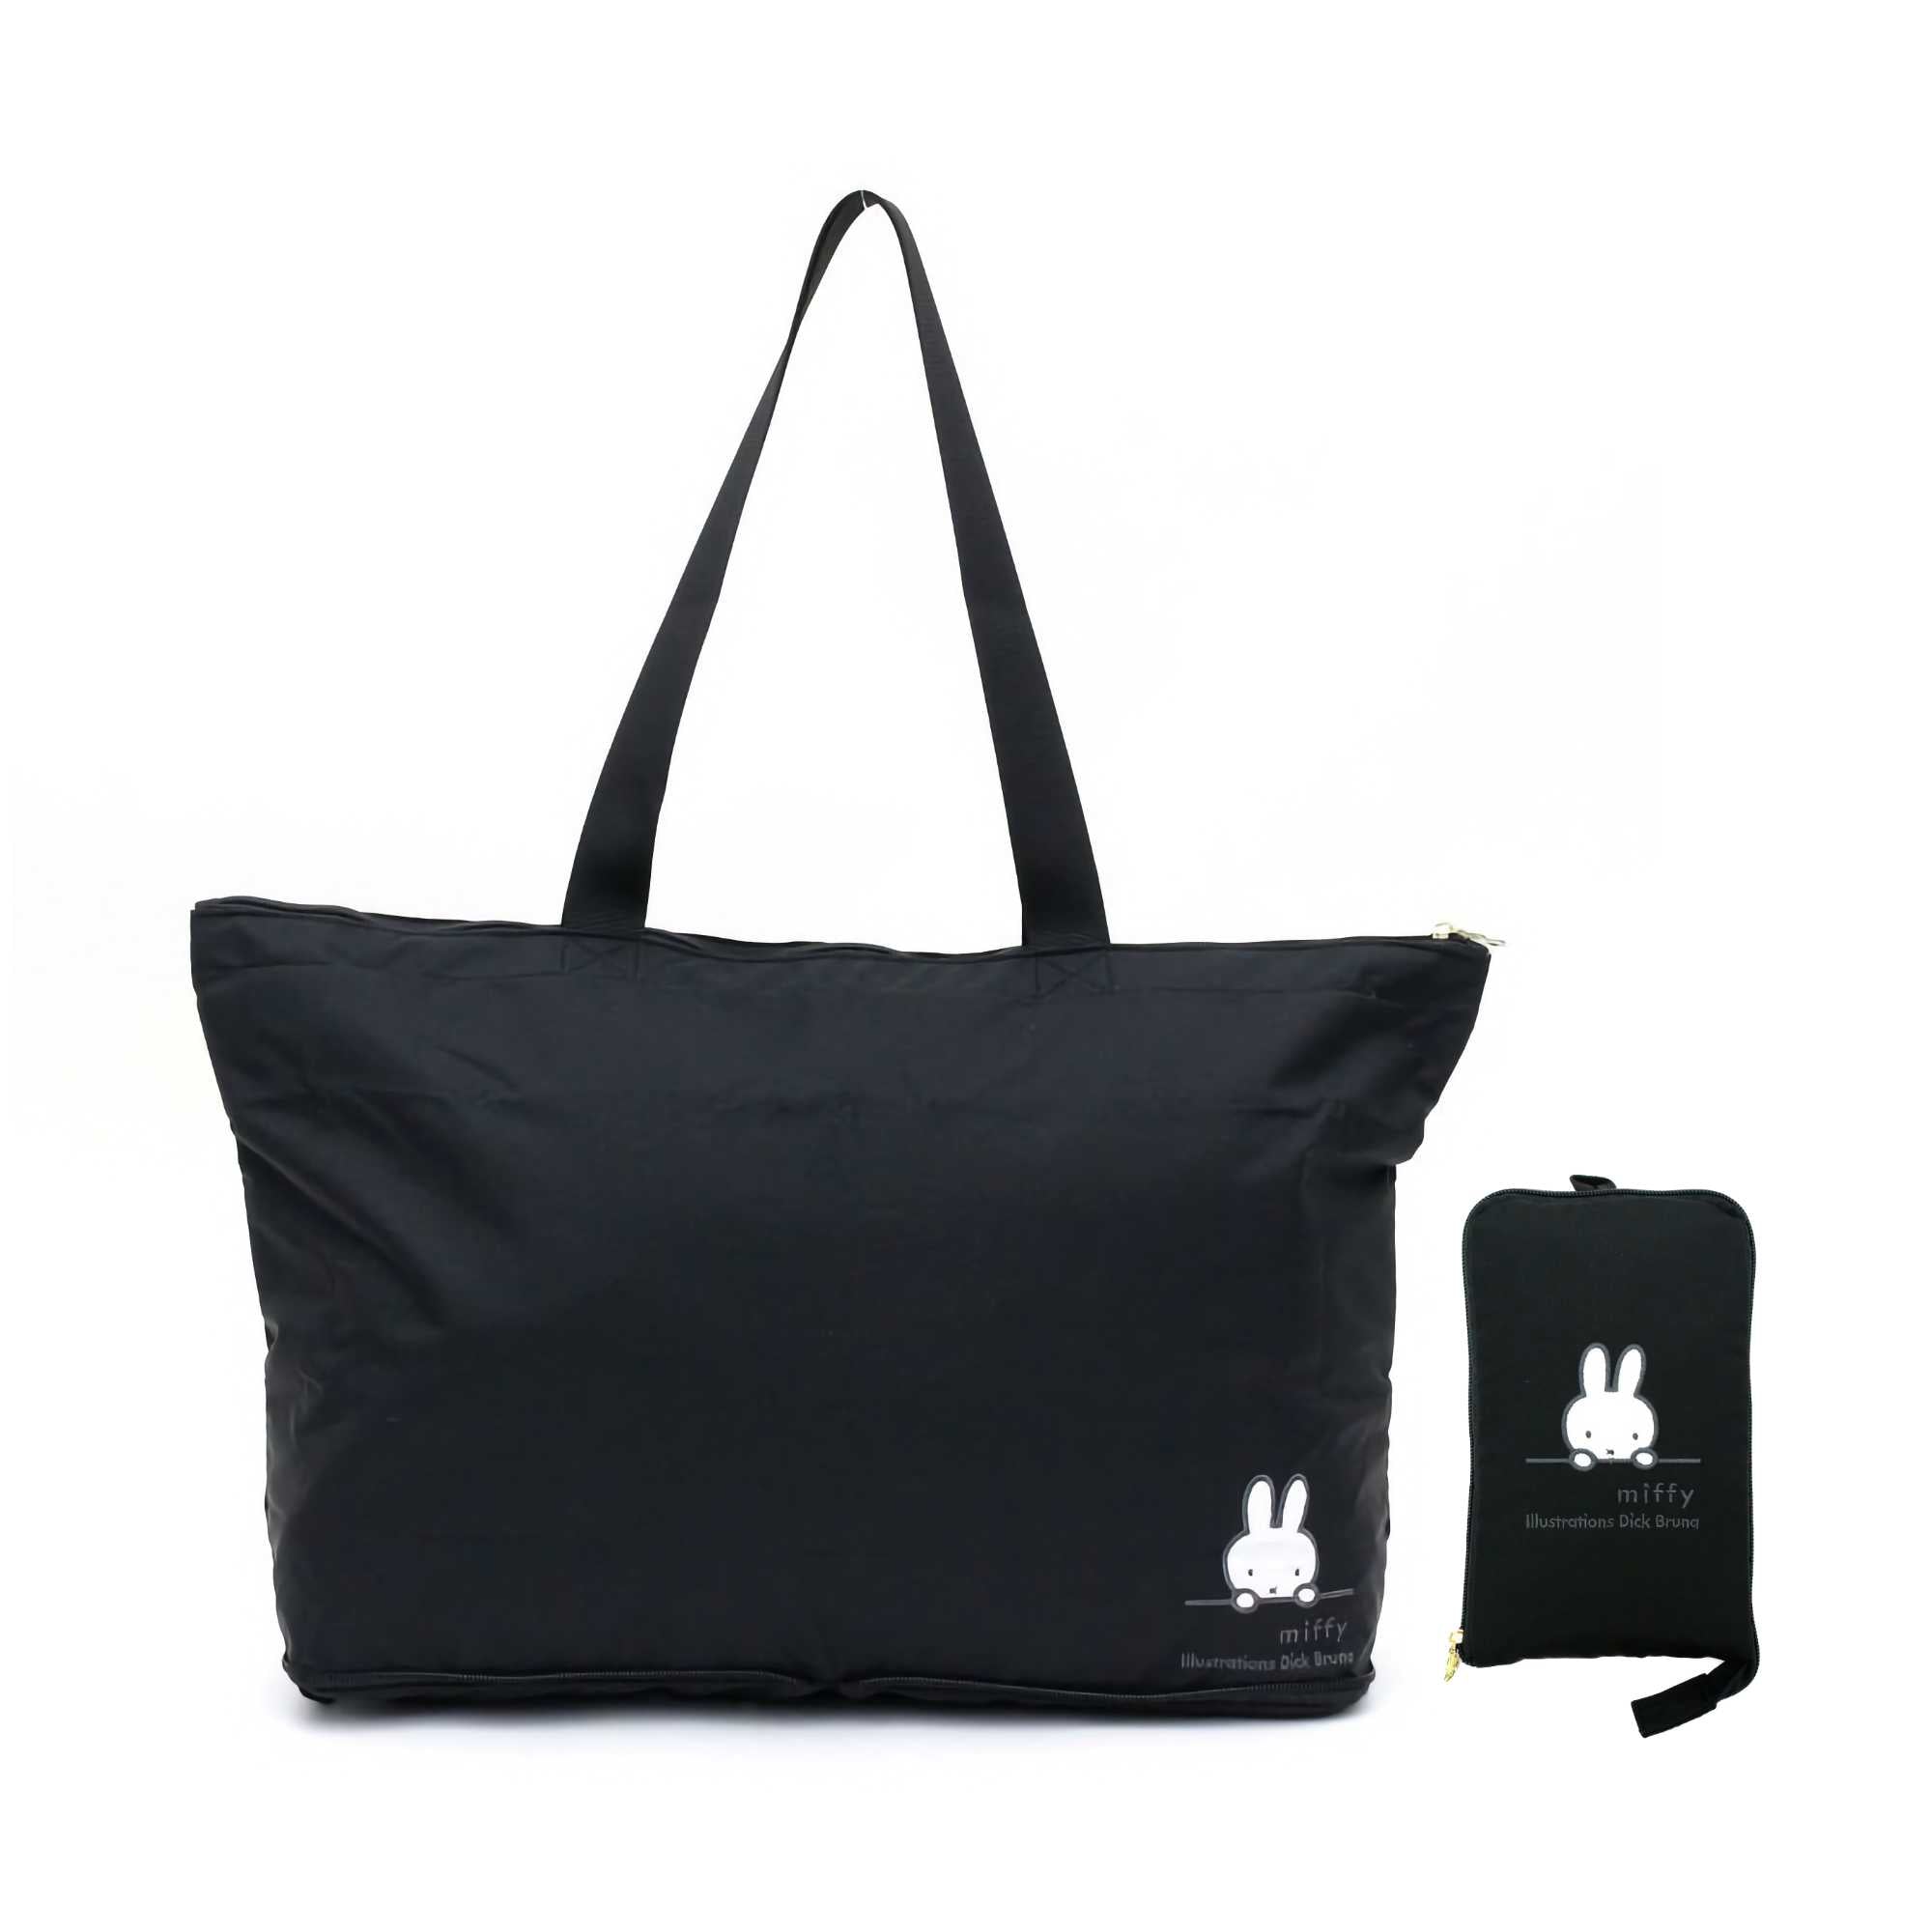 HAPI+TAS© Miffy Foldable Tote Bag 17L, Black Face